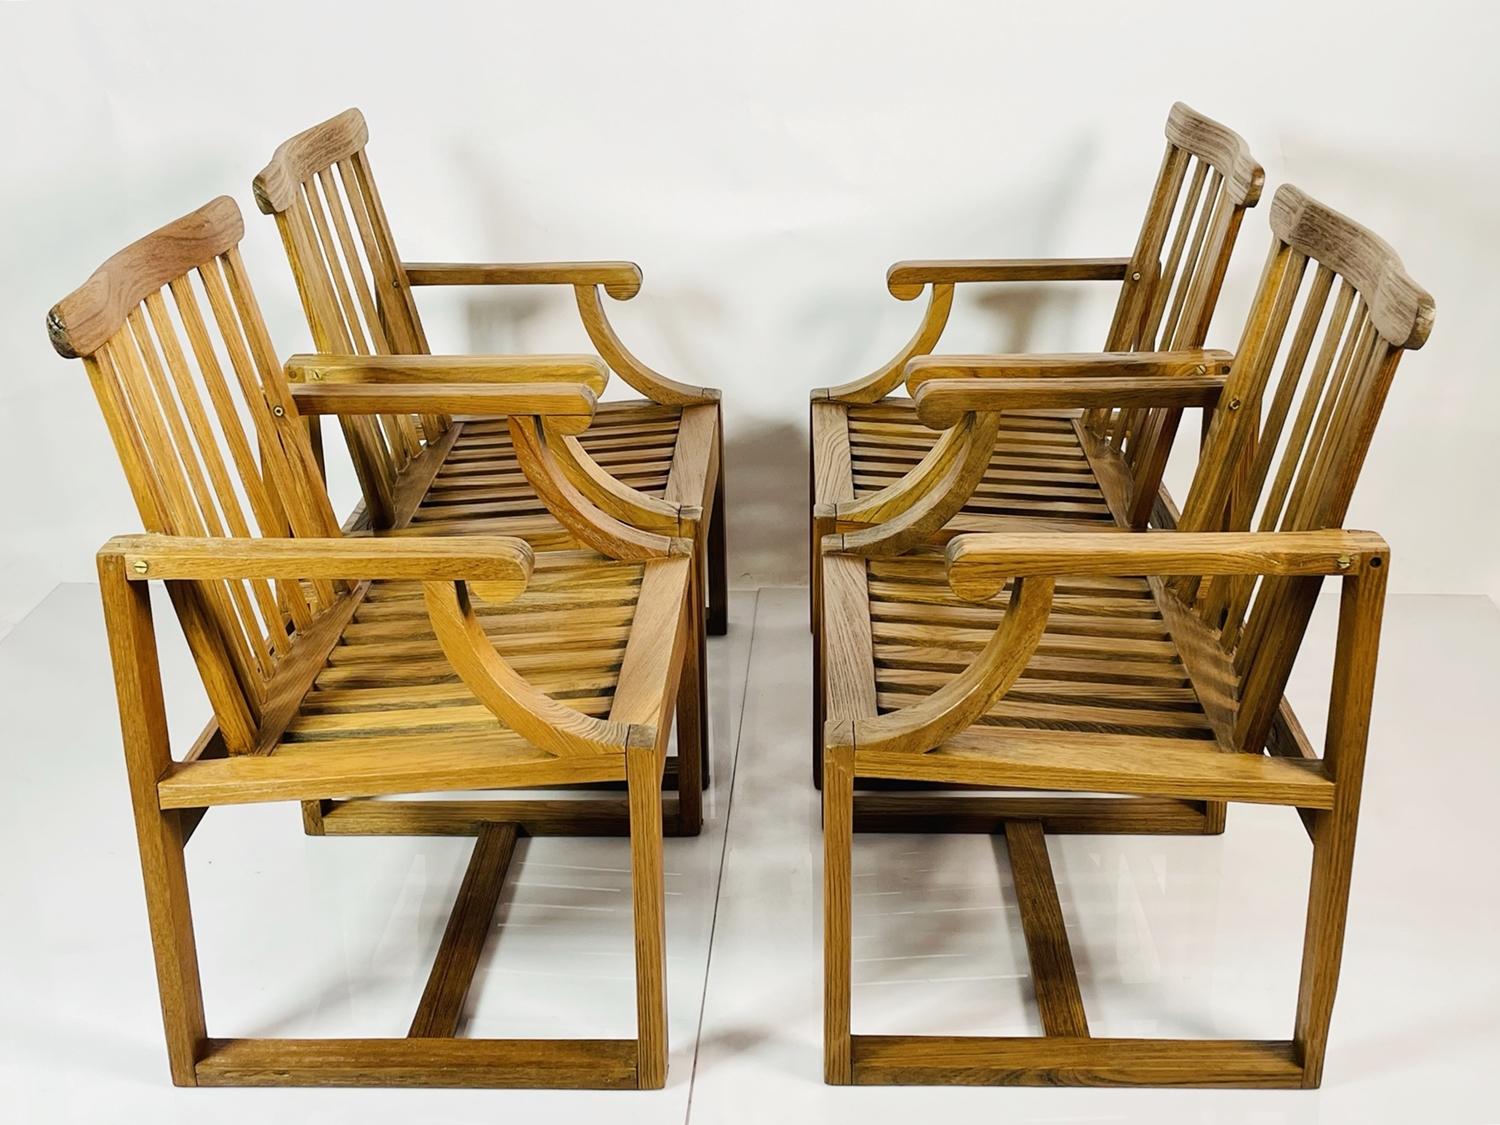 Wir haben insgesamt 12 Stühle oder 3 Sätze von 4.

Das 4er-Set First Cabin Dining Chairs von Kipp Stewart für Summit Furniture ist die perfekte Ergänzung für jedes Esszimmer. Diese vom renommierten Designer Kipp Stewart entworfenen Stühle sind der